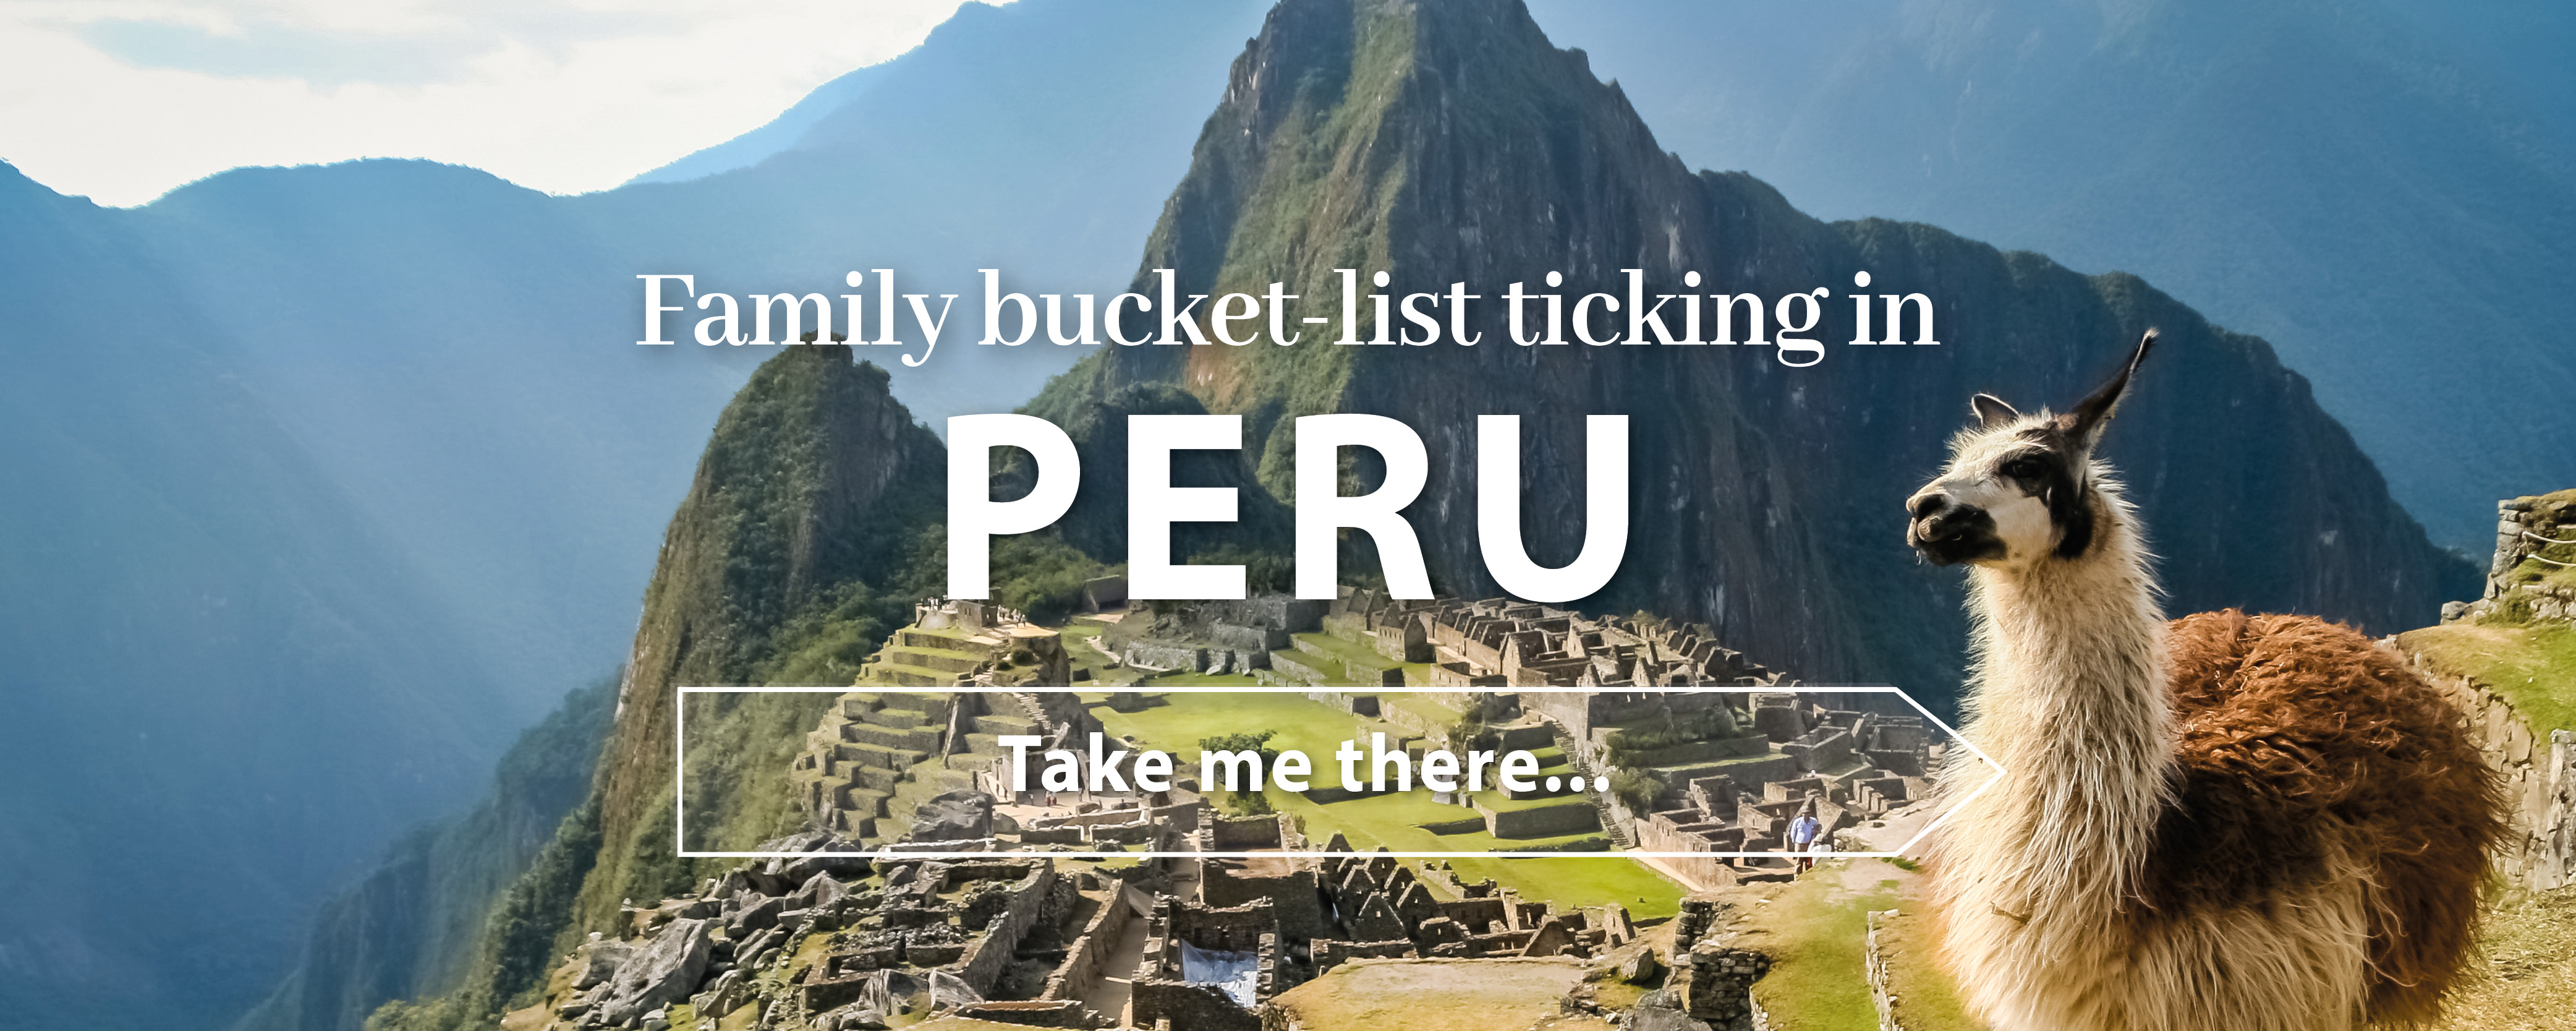 5 summer holiday ideas Peru